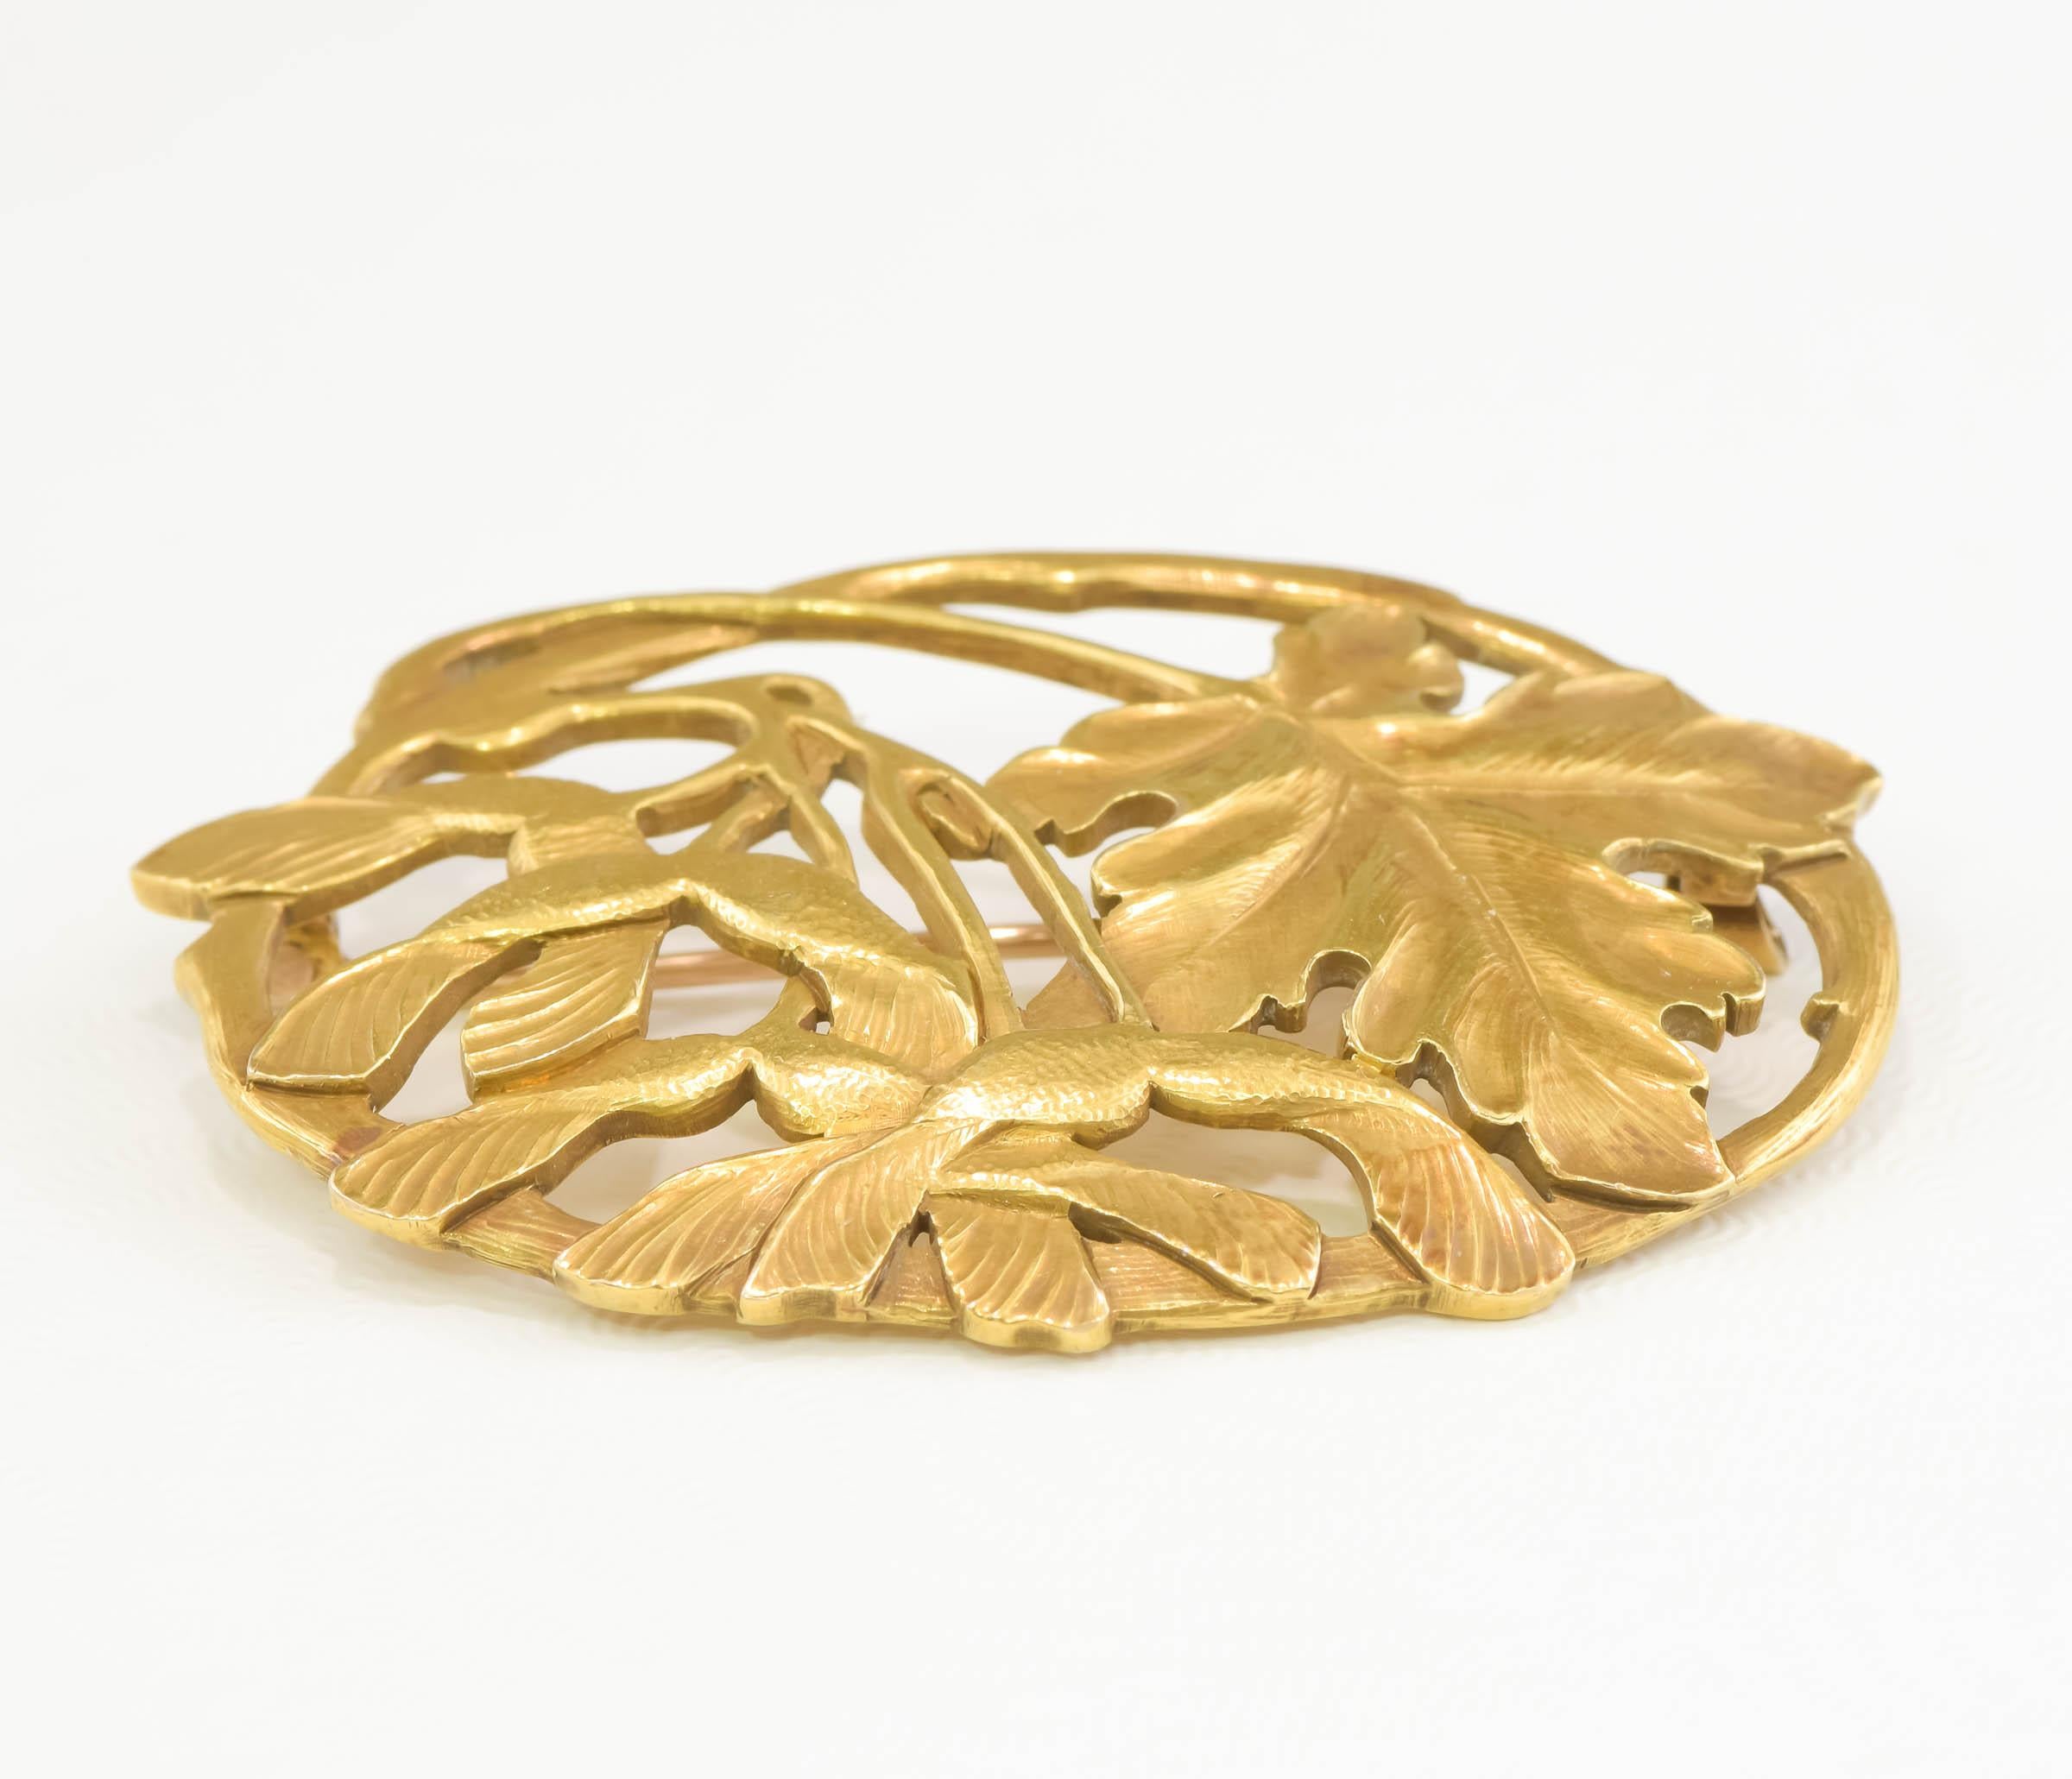 Women's or Men's Antique Arts & Crafts 18K Gold Brooch by Potter Studio - Large Foliate Design